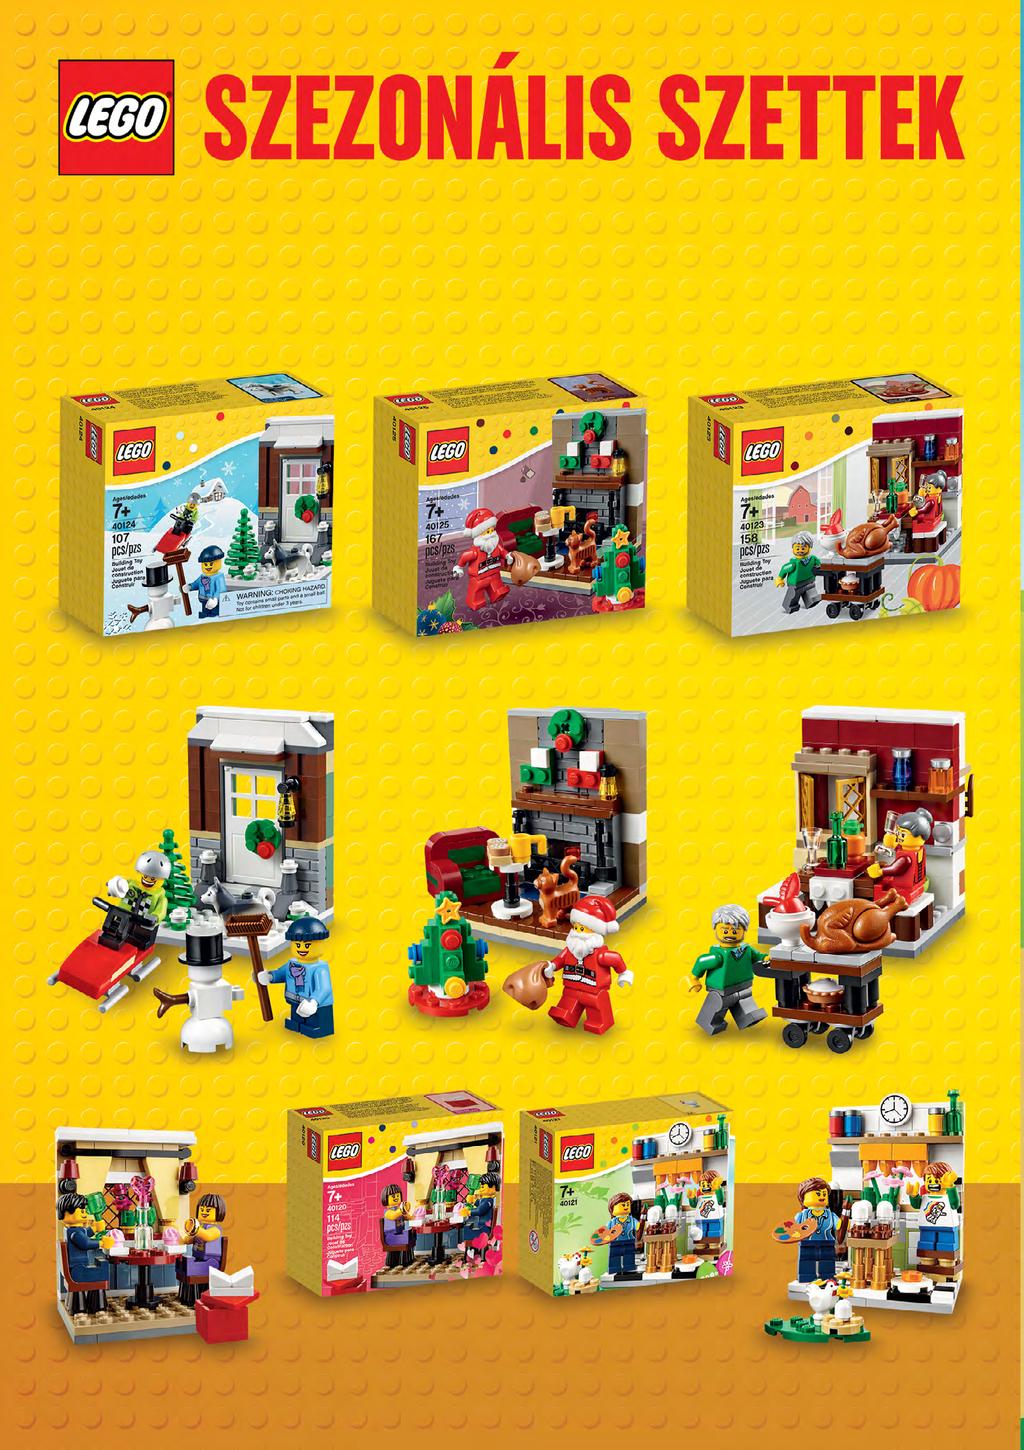 LEGO AJÁNDÉKOK MINDEN ALKALOMRA! A LEGO Store exkluzív szezonális szettjeivel szinte minden alkalomra meglepheted szeretteidet, legyen szó mikulásról, karácsonyról vagy akár Valentin napról.